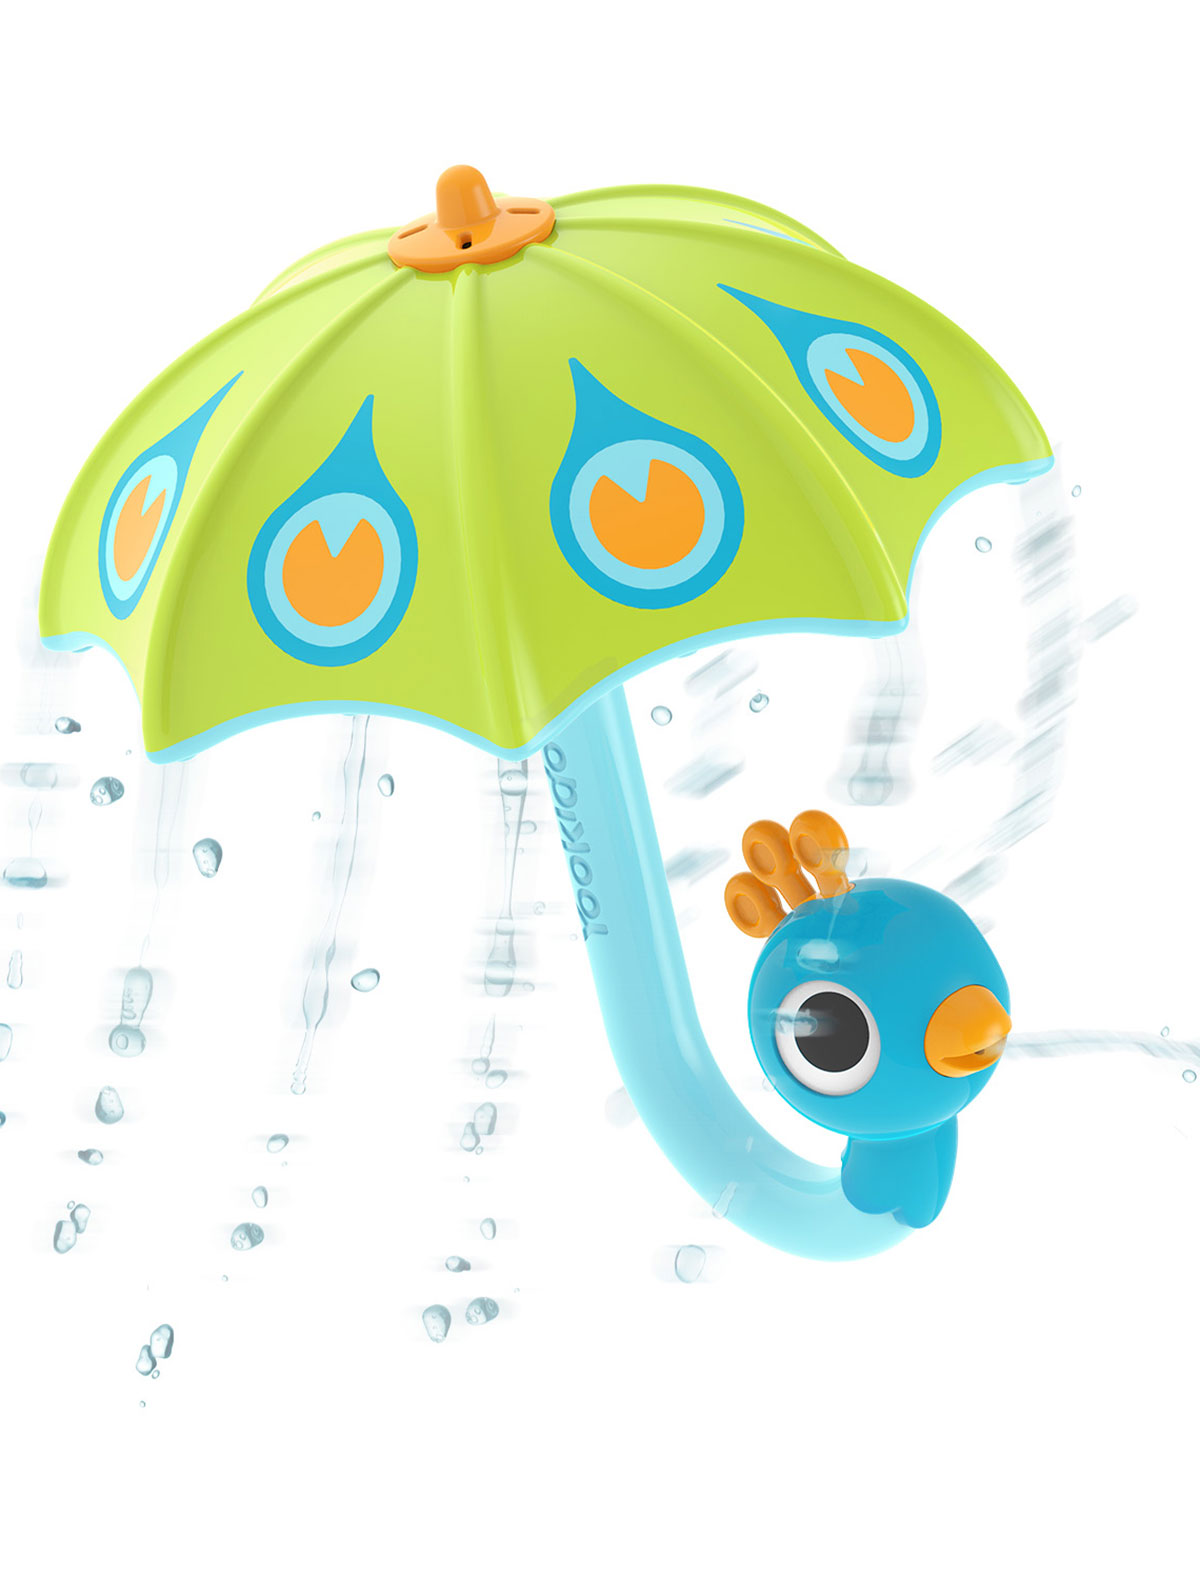 Игрушка YooKidoo игрушка водная yookidoo веселый слон голубой